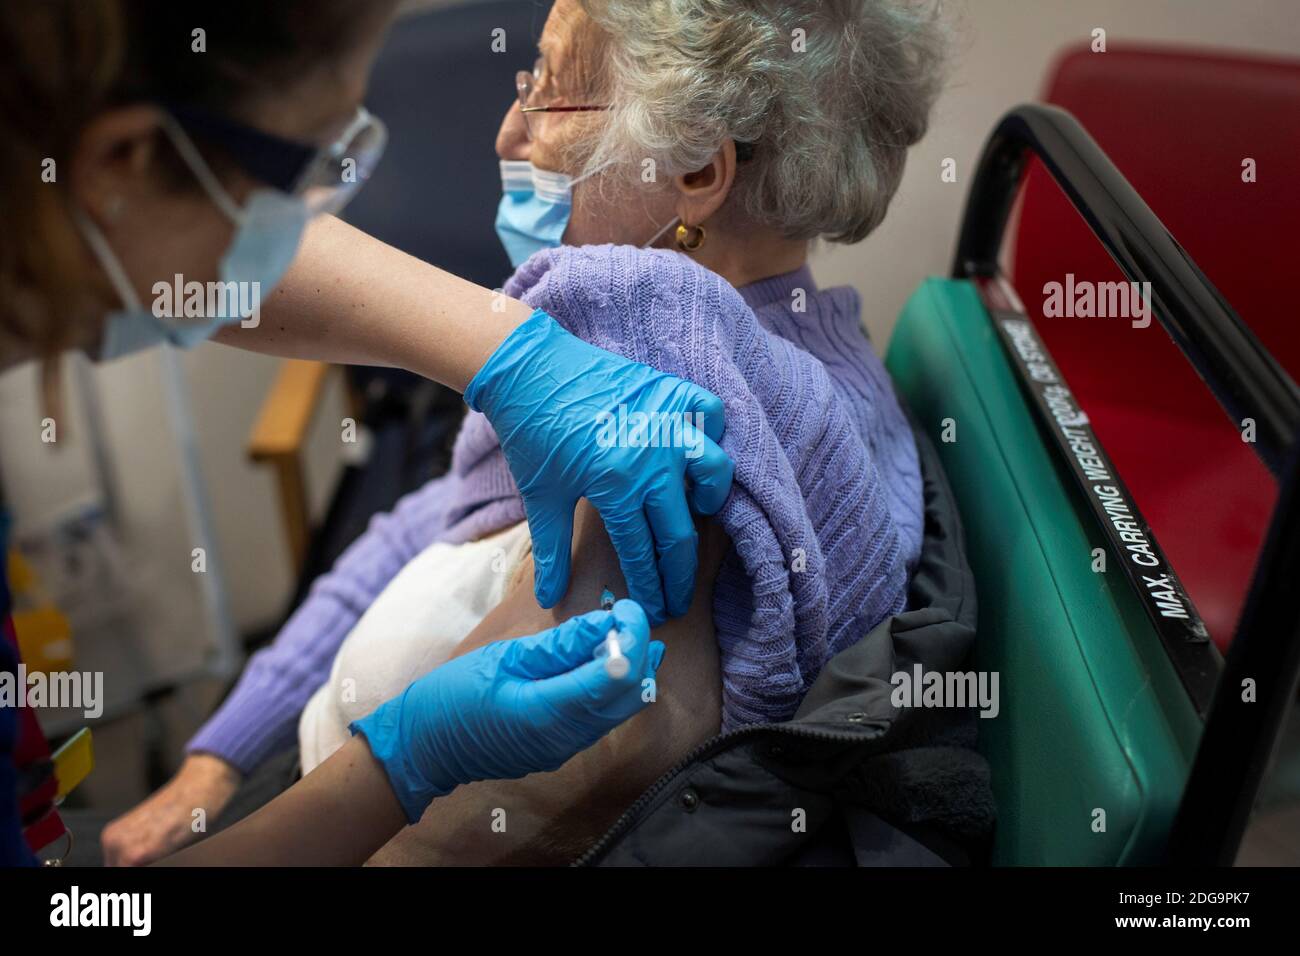 Una donna riceve il primo dei due vaccini Pfizer/BioNTech COVID-19, presso il Guy's Hospital, all'inizio del più grande programma di immunizzazione della storia britannica, a Londra, in Gran Bretagna, l'8 dicembre 2020. Victoria Jones/Pool via REUTERS Foto Stock